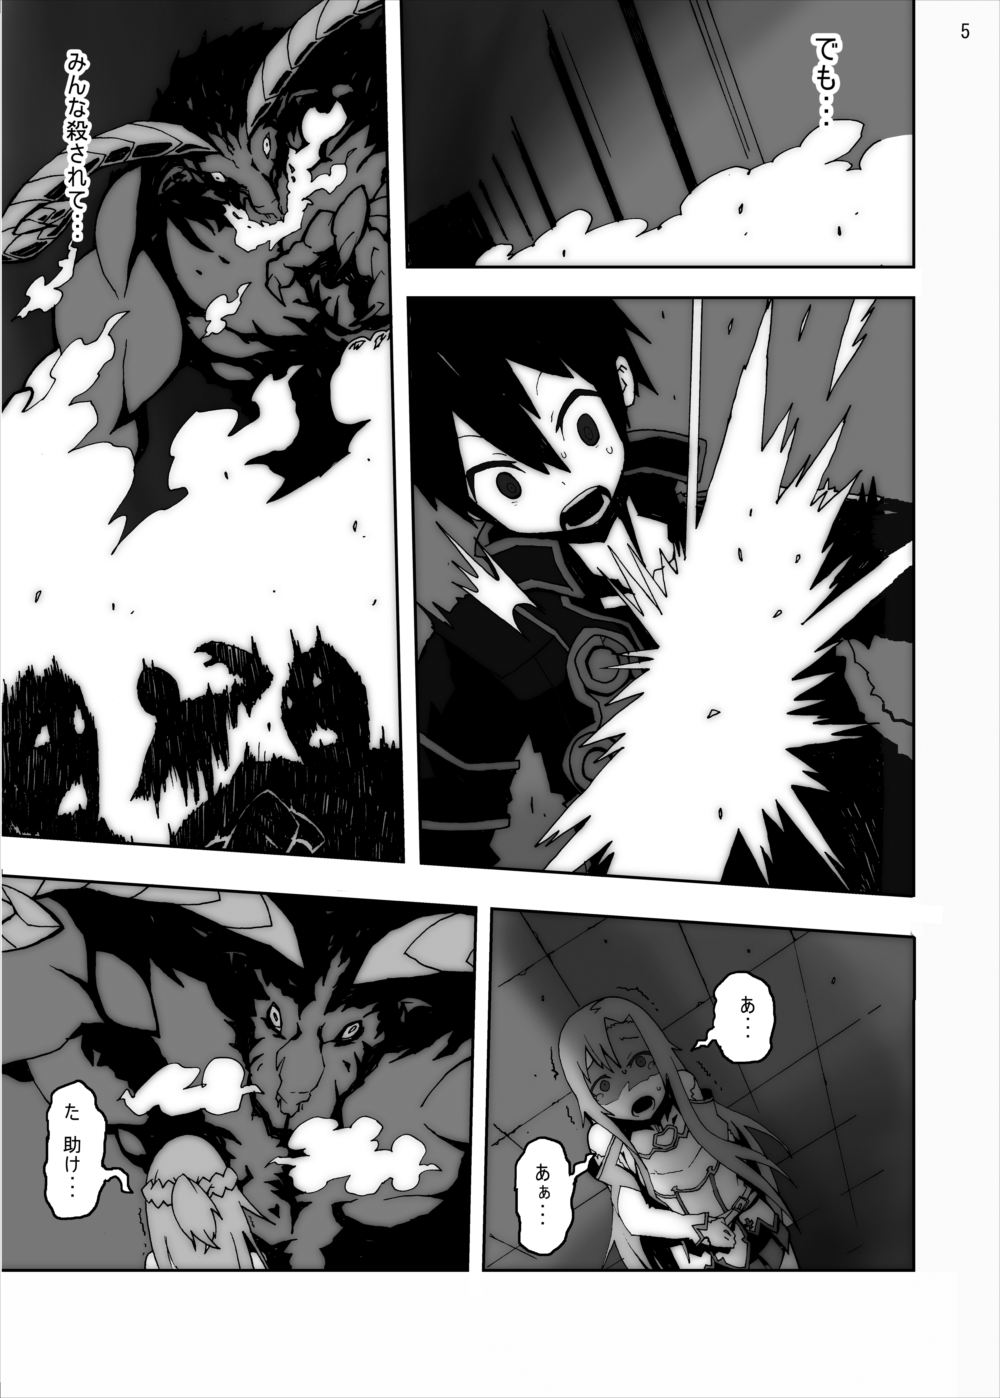 [Studio Nunchaku] Asuna in Tentacle Party Rape Online (Sword Art Online) page 4 full